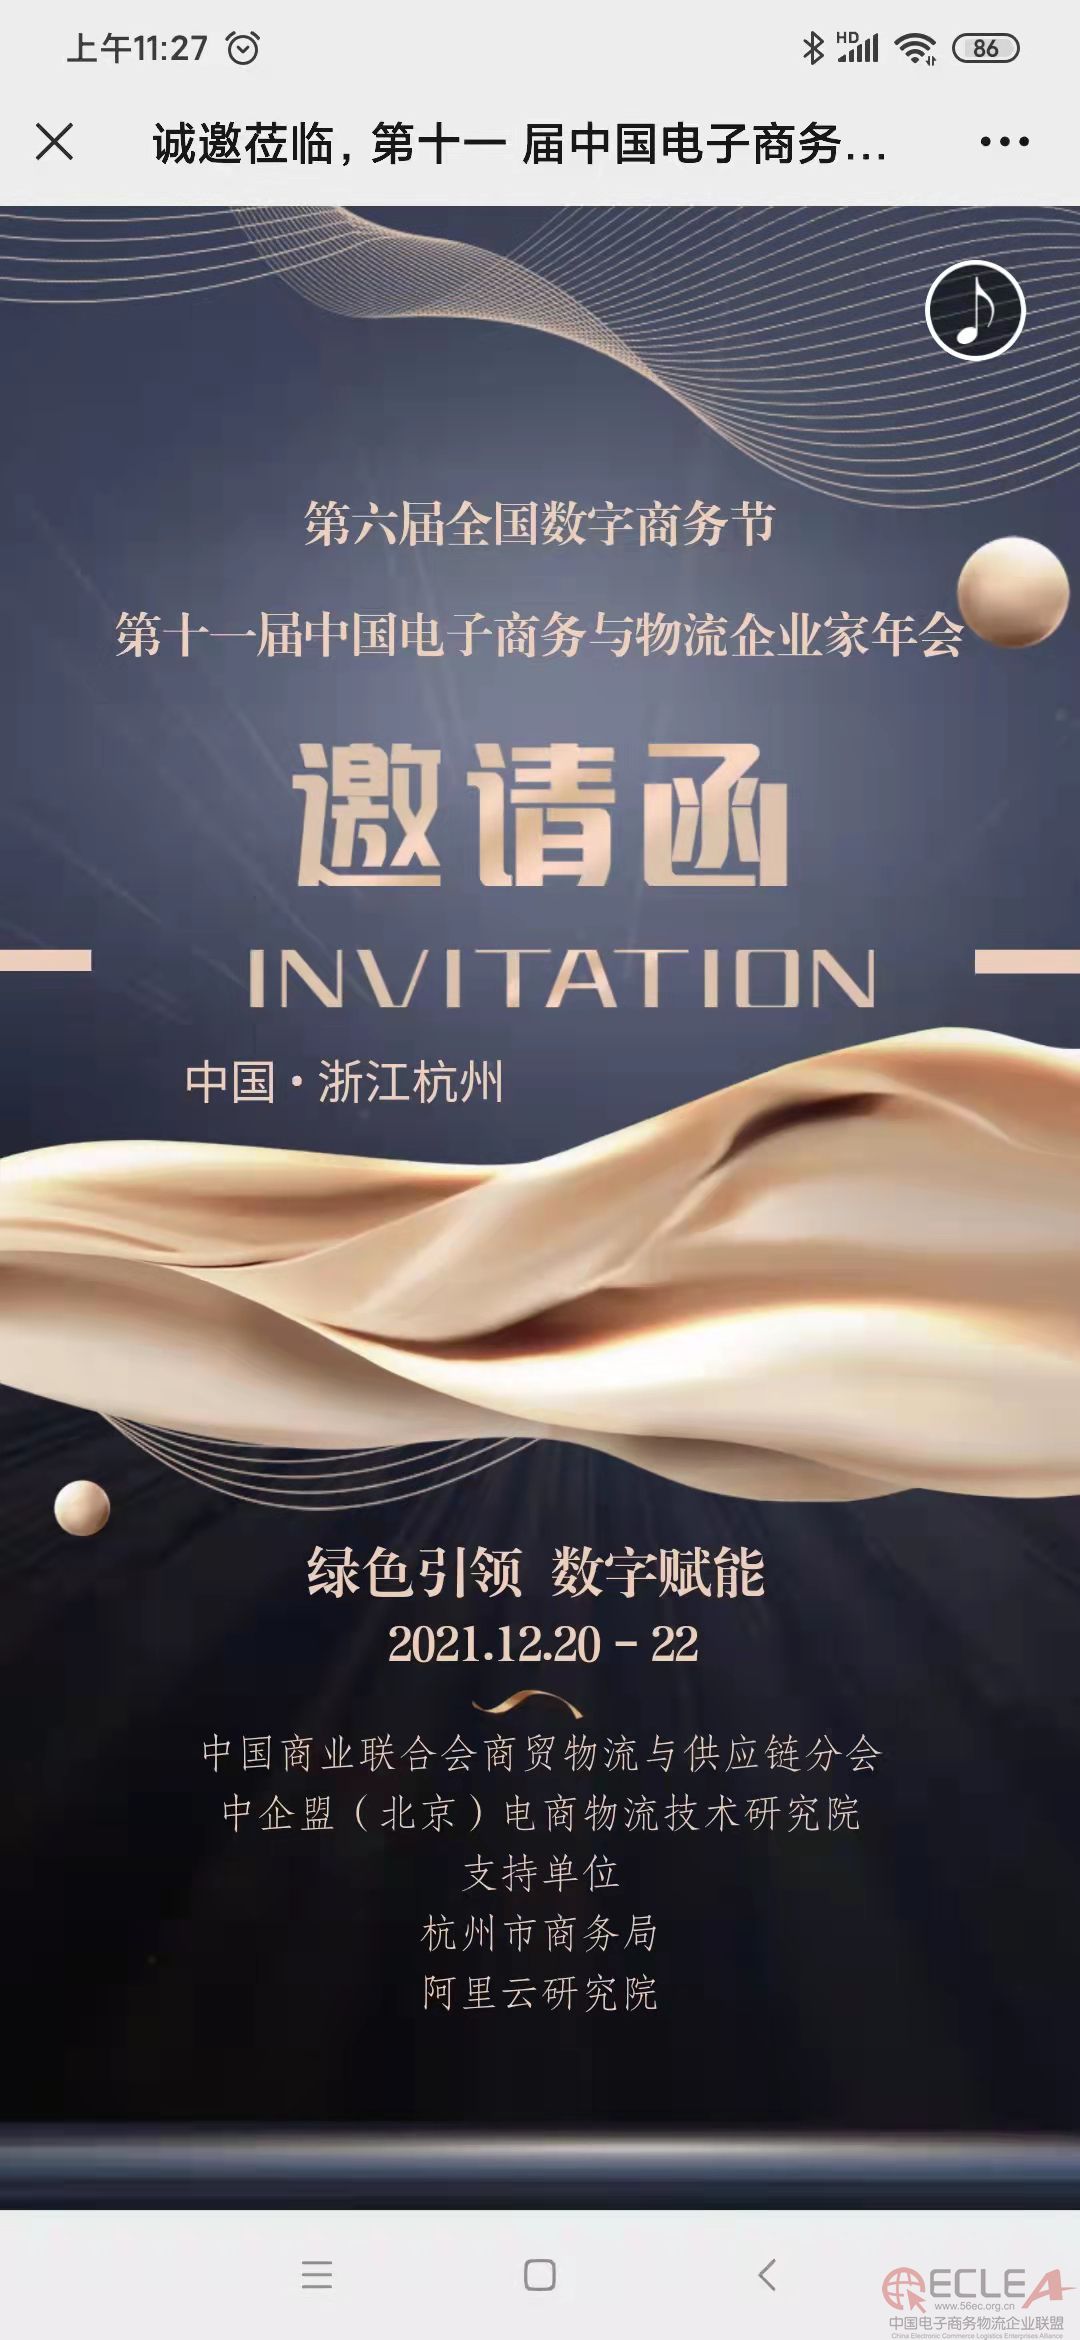 关于举办“第六届全国数字商务节”“第十一届中国电子商务与物流企业家年会”的通知